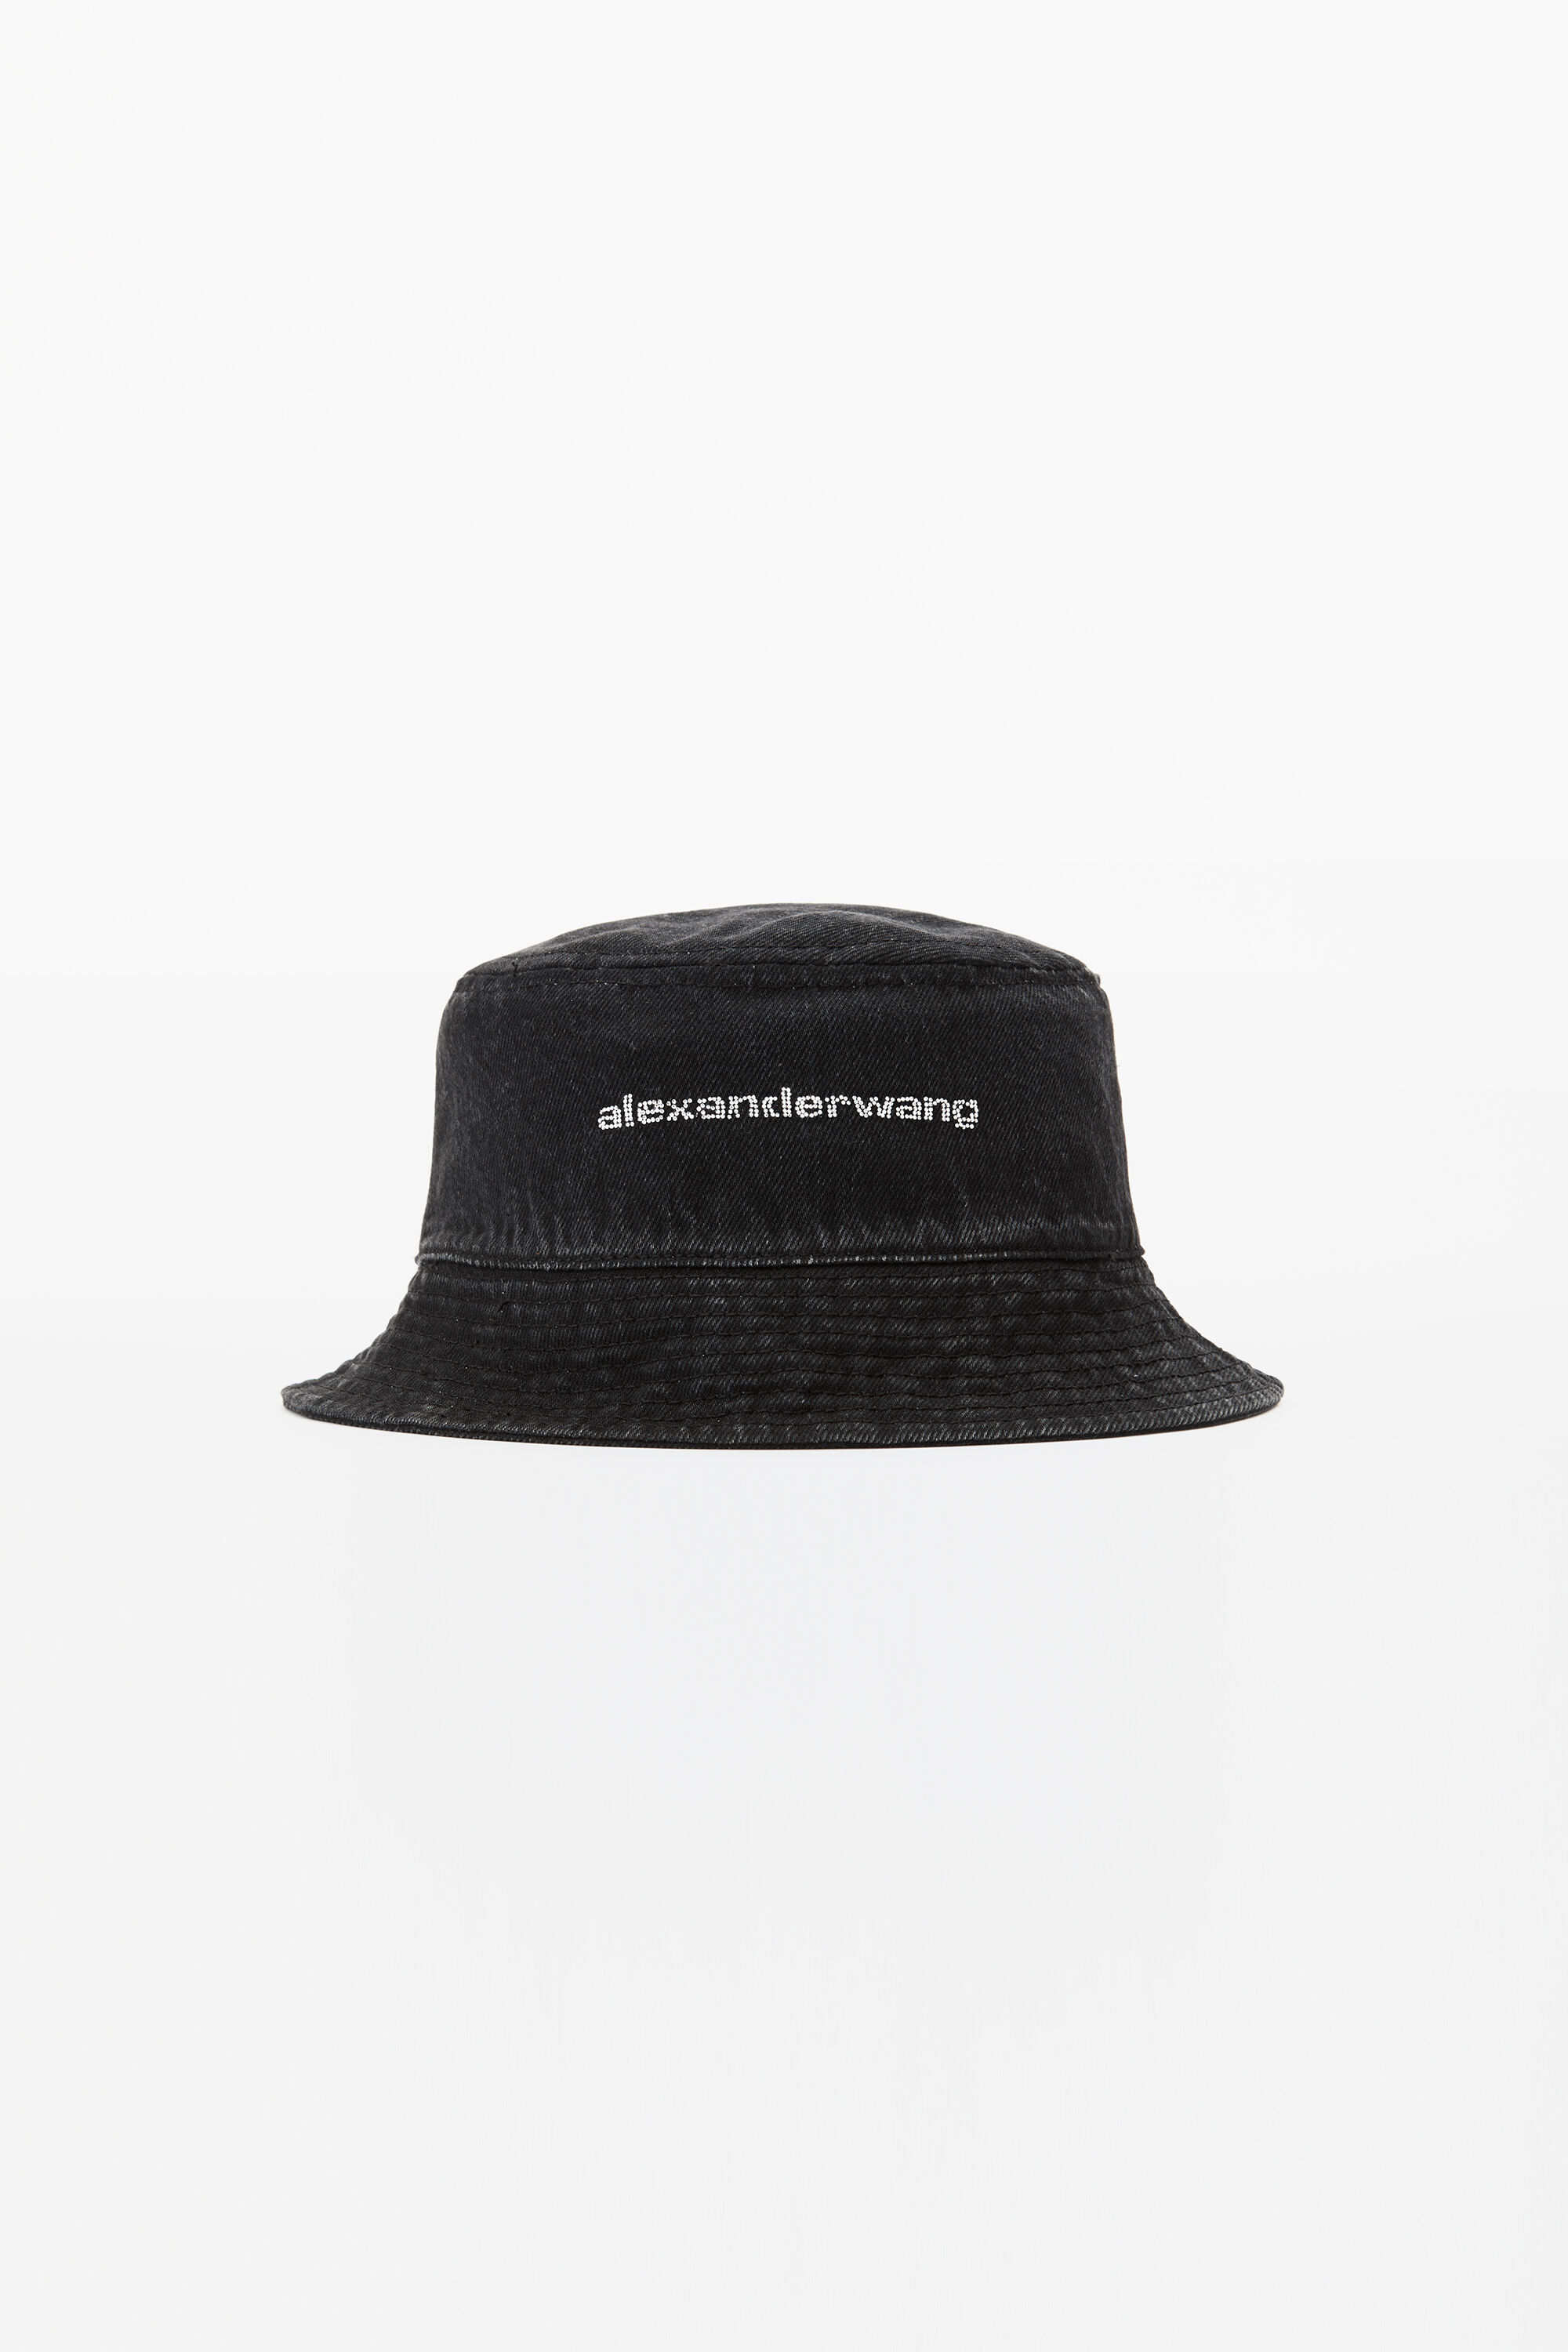 新品☆アレキサンダーワン Alexander wang 帽子 バケットハット - 通販